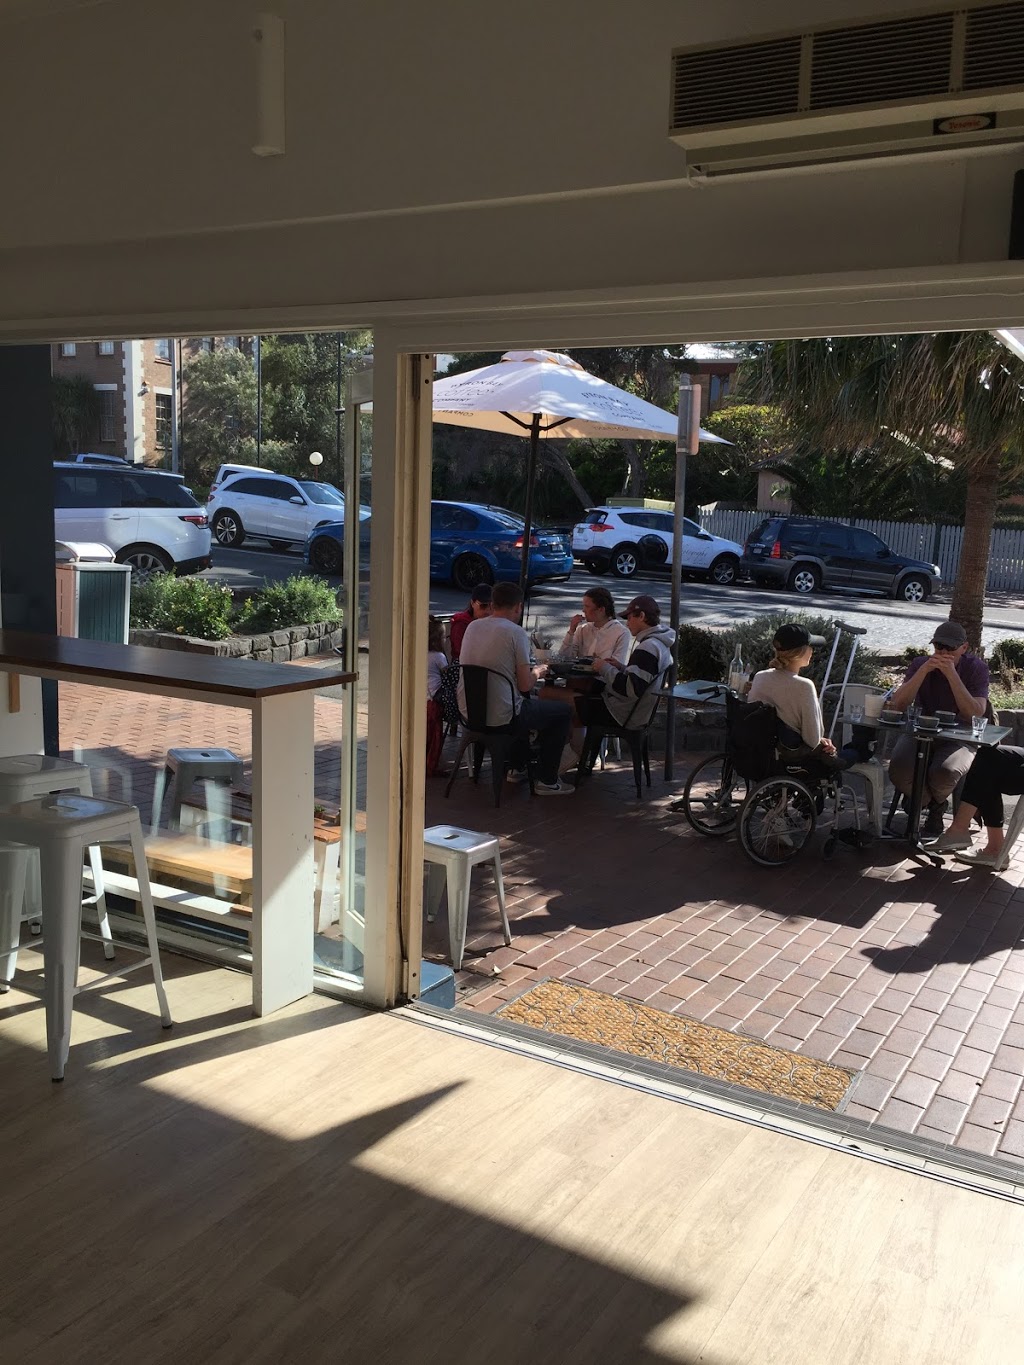 Wild Patch Cafe | cafe | 14 Manning St, Kiama NSW 2533, Australia | 0477340312 OR +61 477 340 312